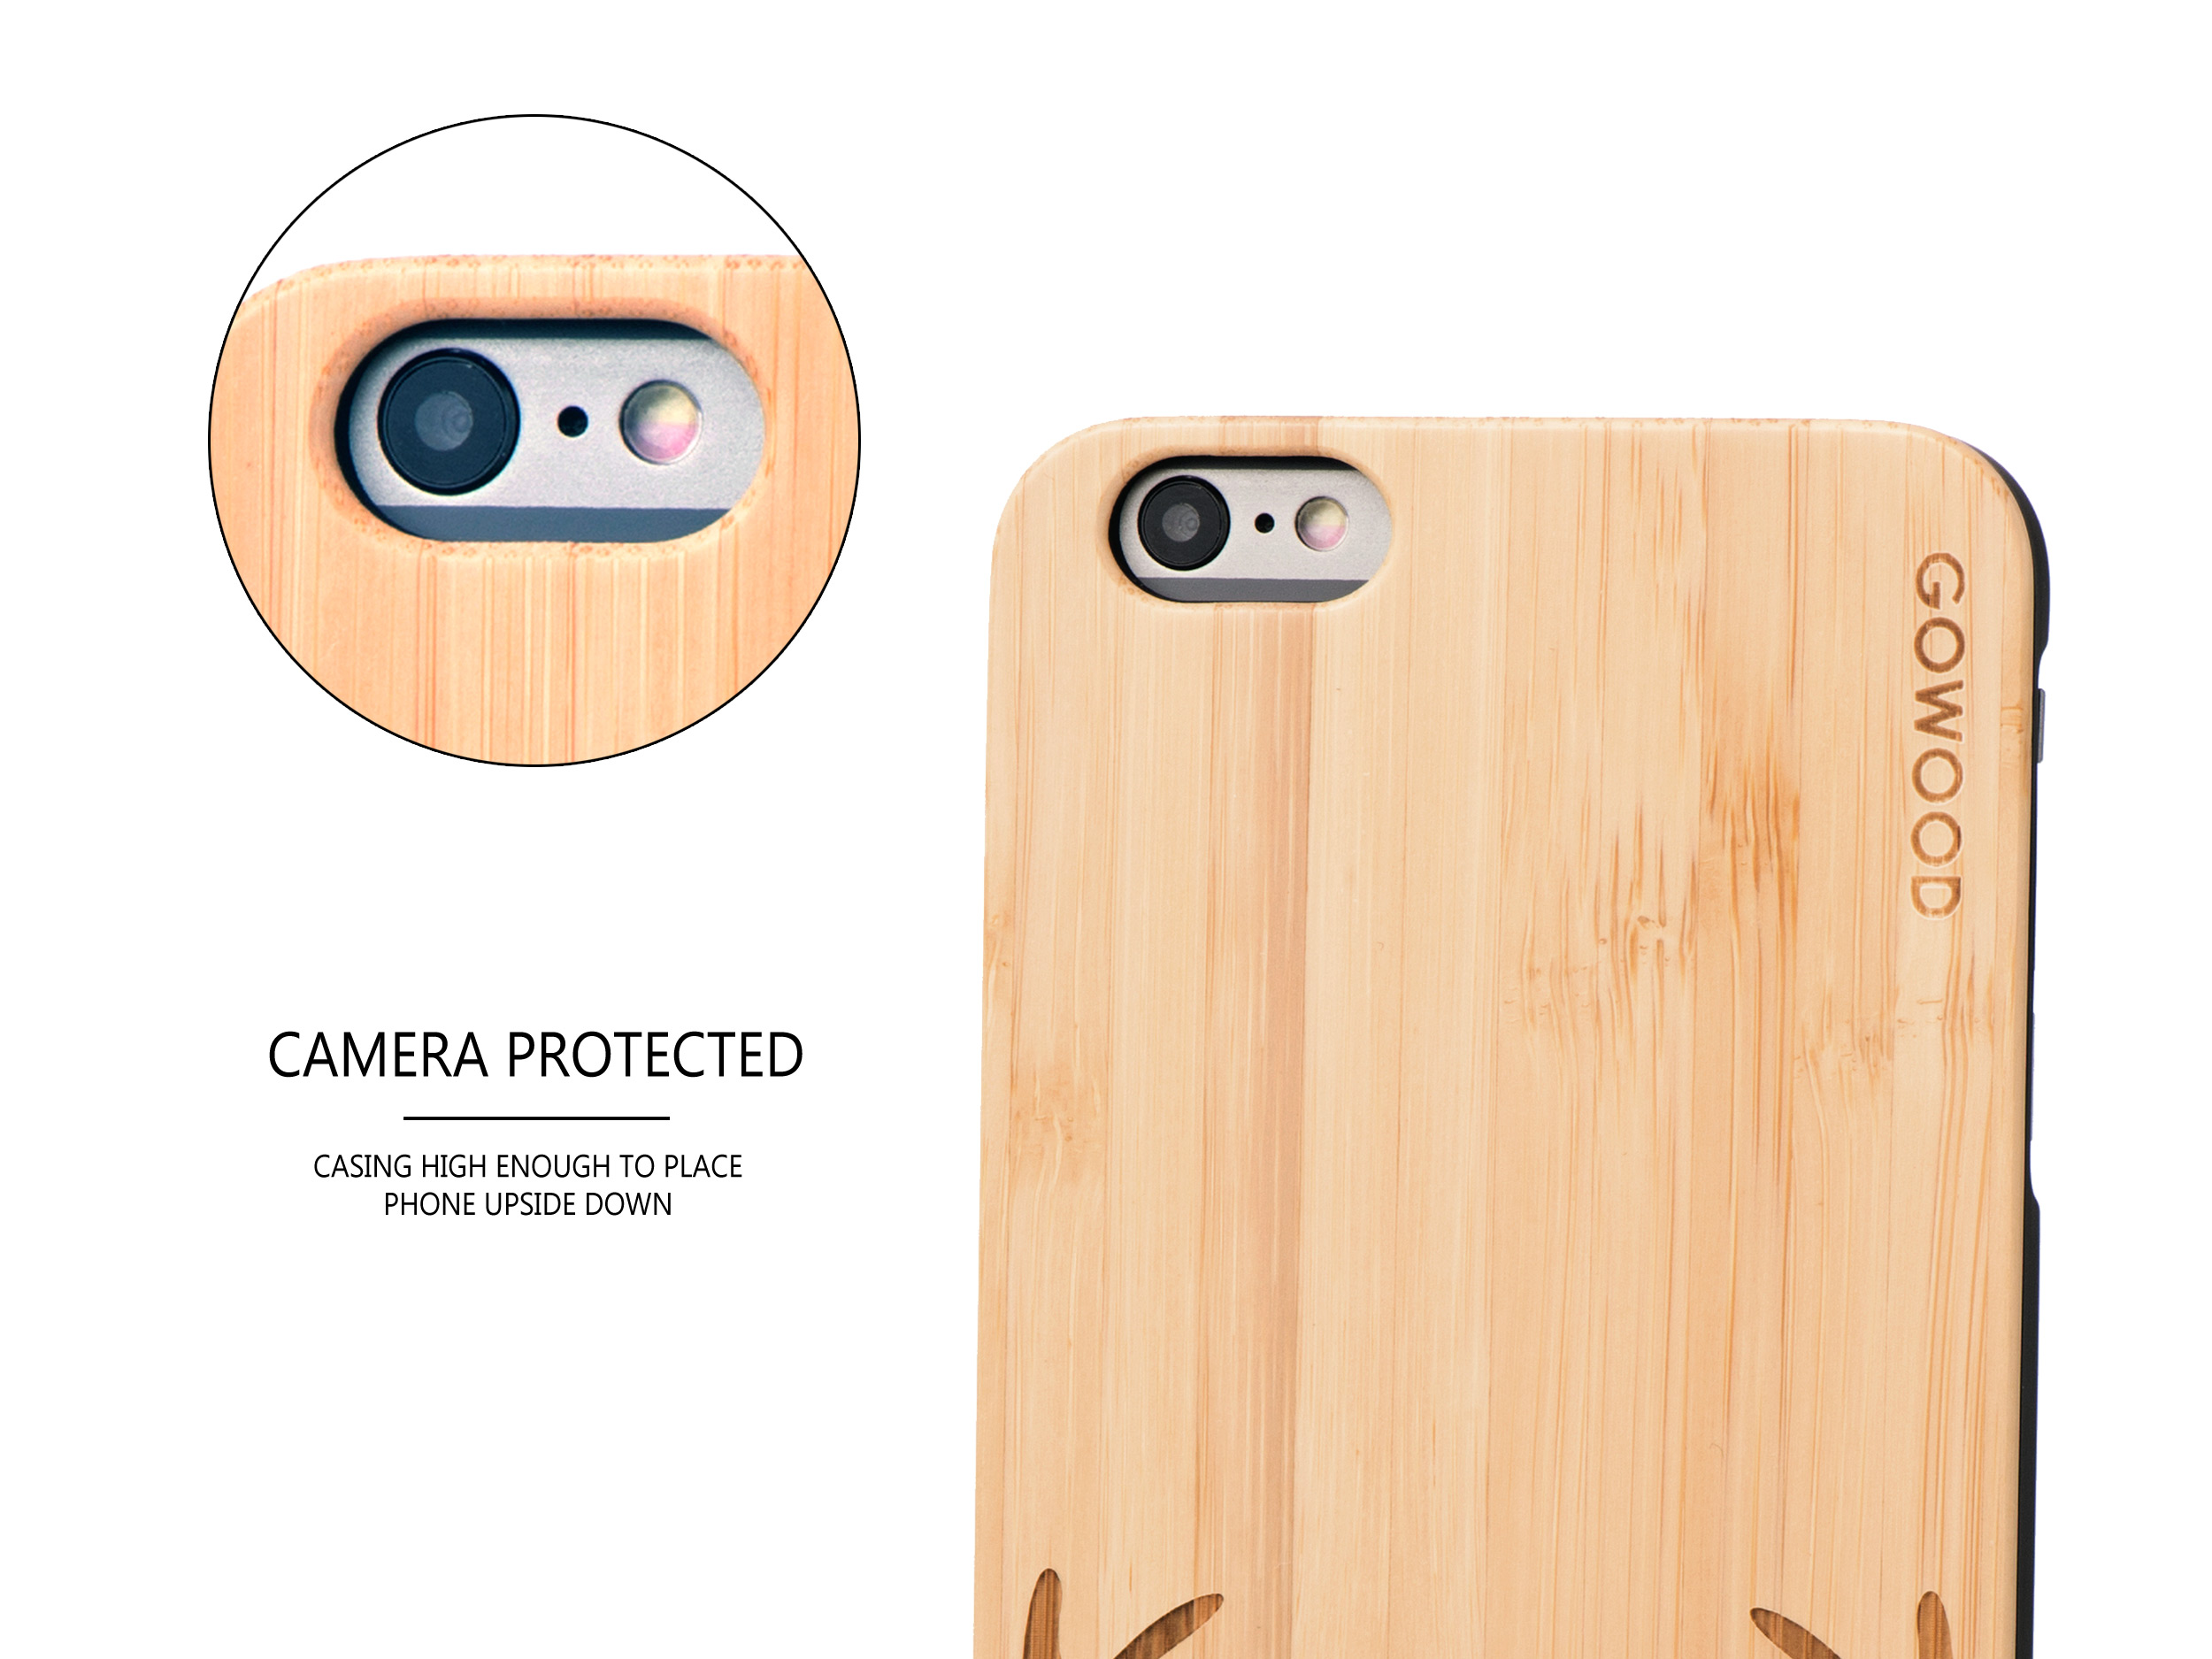 iPhone 6 Plus wood case deer camera